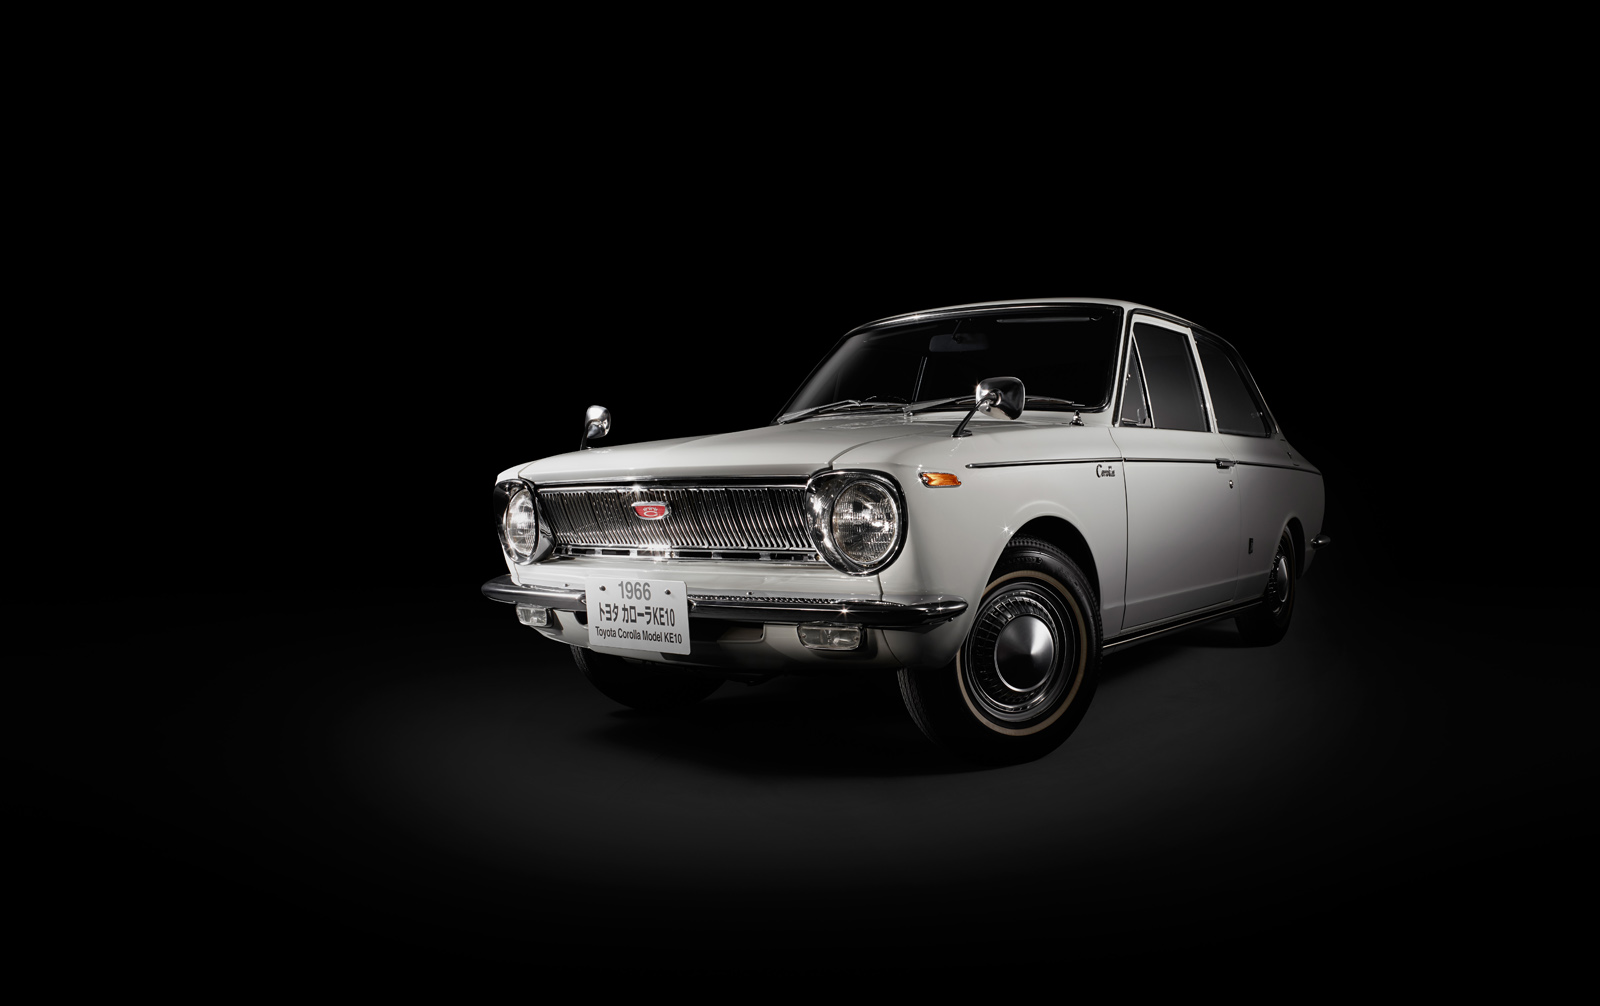 
... Toyota Corolla thế hệ đầu tiên ra mắt vào năm 1966.
